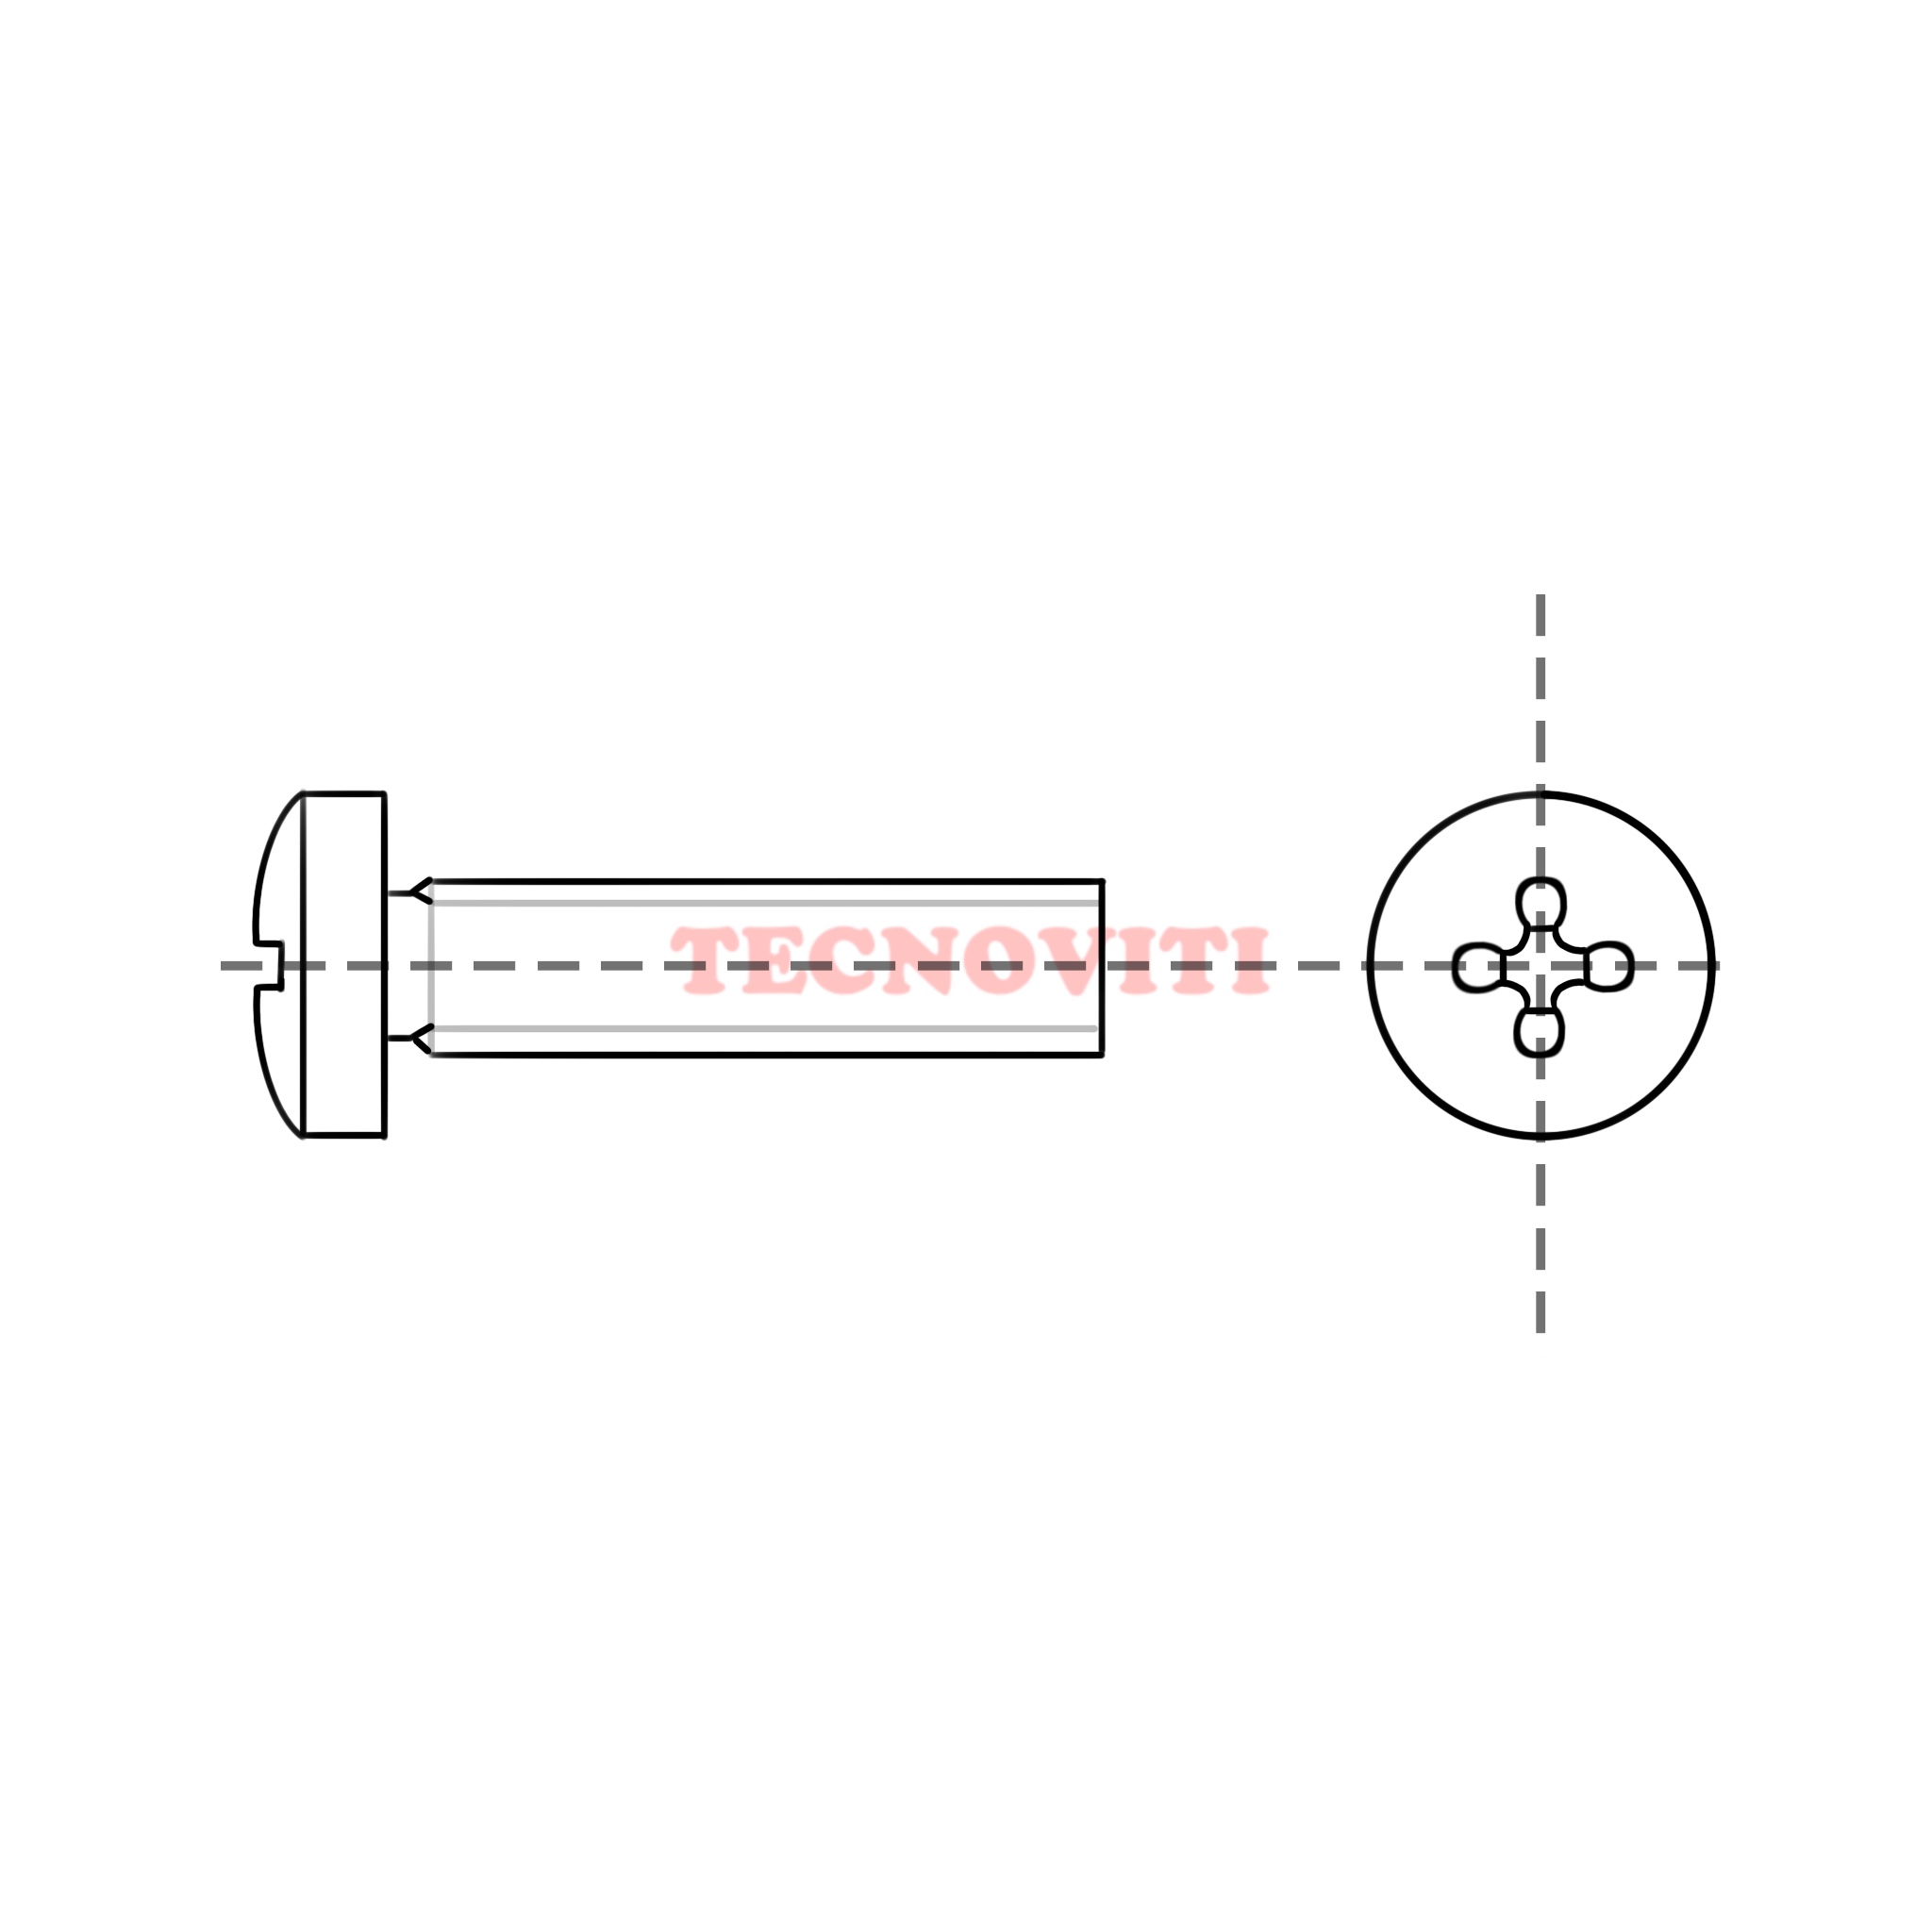 Disegno tecnico Viti con testa cilindrica ed impronta croce (TC+) in pollici, passo americano UNC. TECNOCODE: 7687UNC